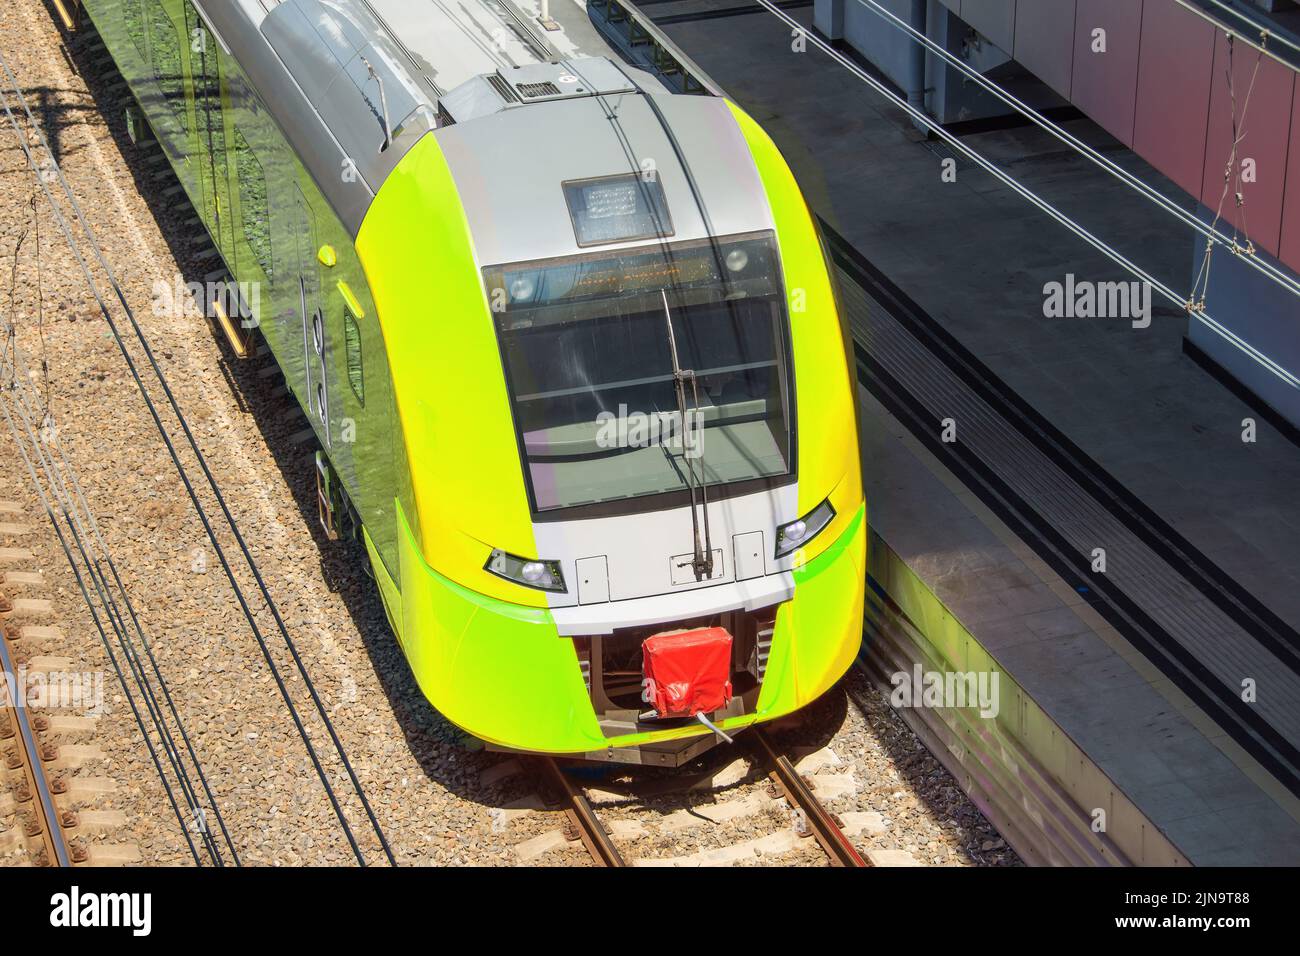 Tren eléctrico amarillo suburbano en la plataforma de pasajeros de la estación Foto de stock